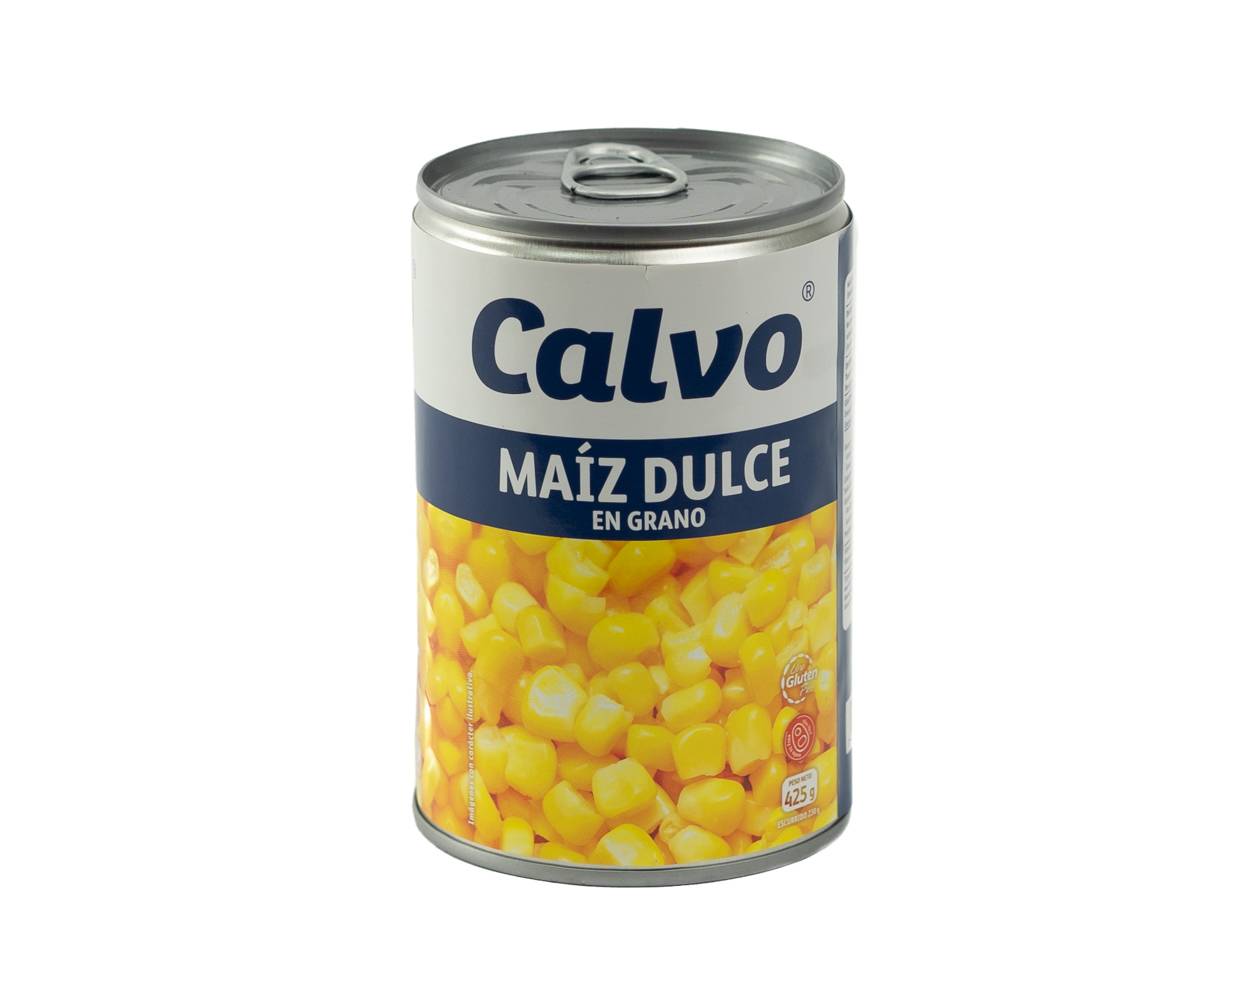 Calvo maíz dulce (lata 425 g)